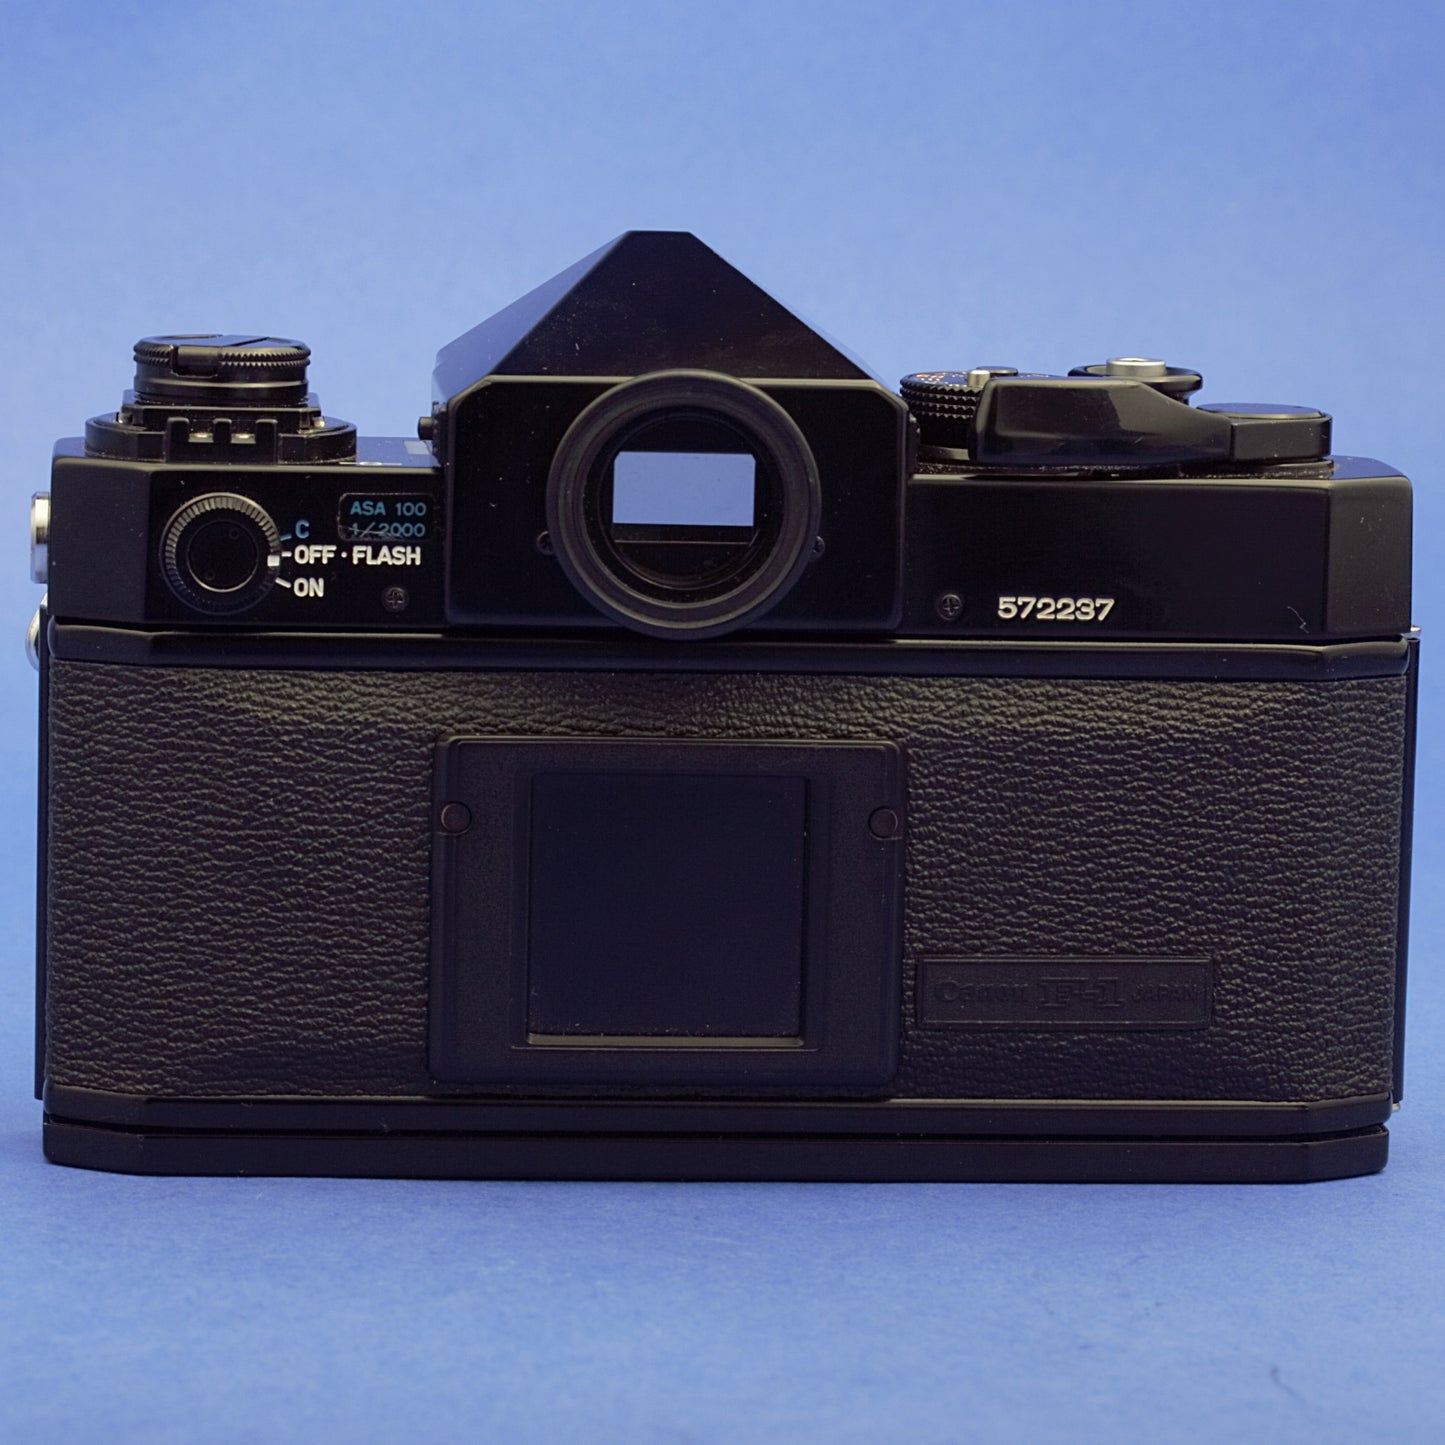 Canon F-1 Film Camera Body Near Mint Condition